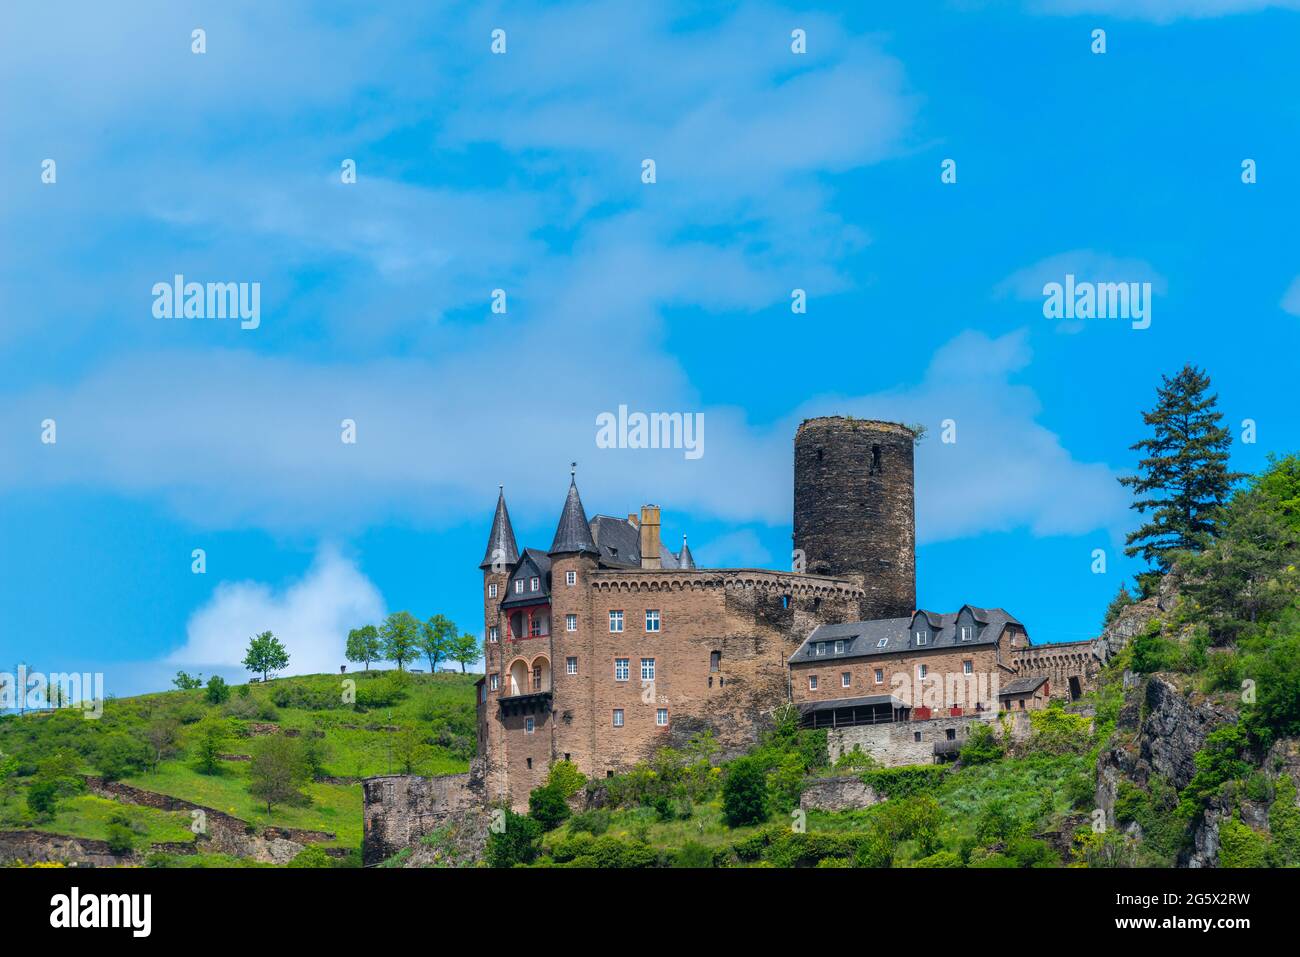 Château de Katz du XIVe siècle, Saint-Goarshausen, vallée du Haut-Rhin moyen, région du patrimoine mondial de l'UNESCO, Rhénanie-Palatinat, Allemagne Banque D'Images